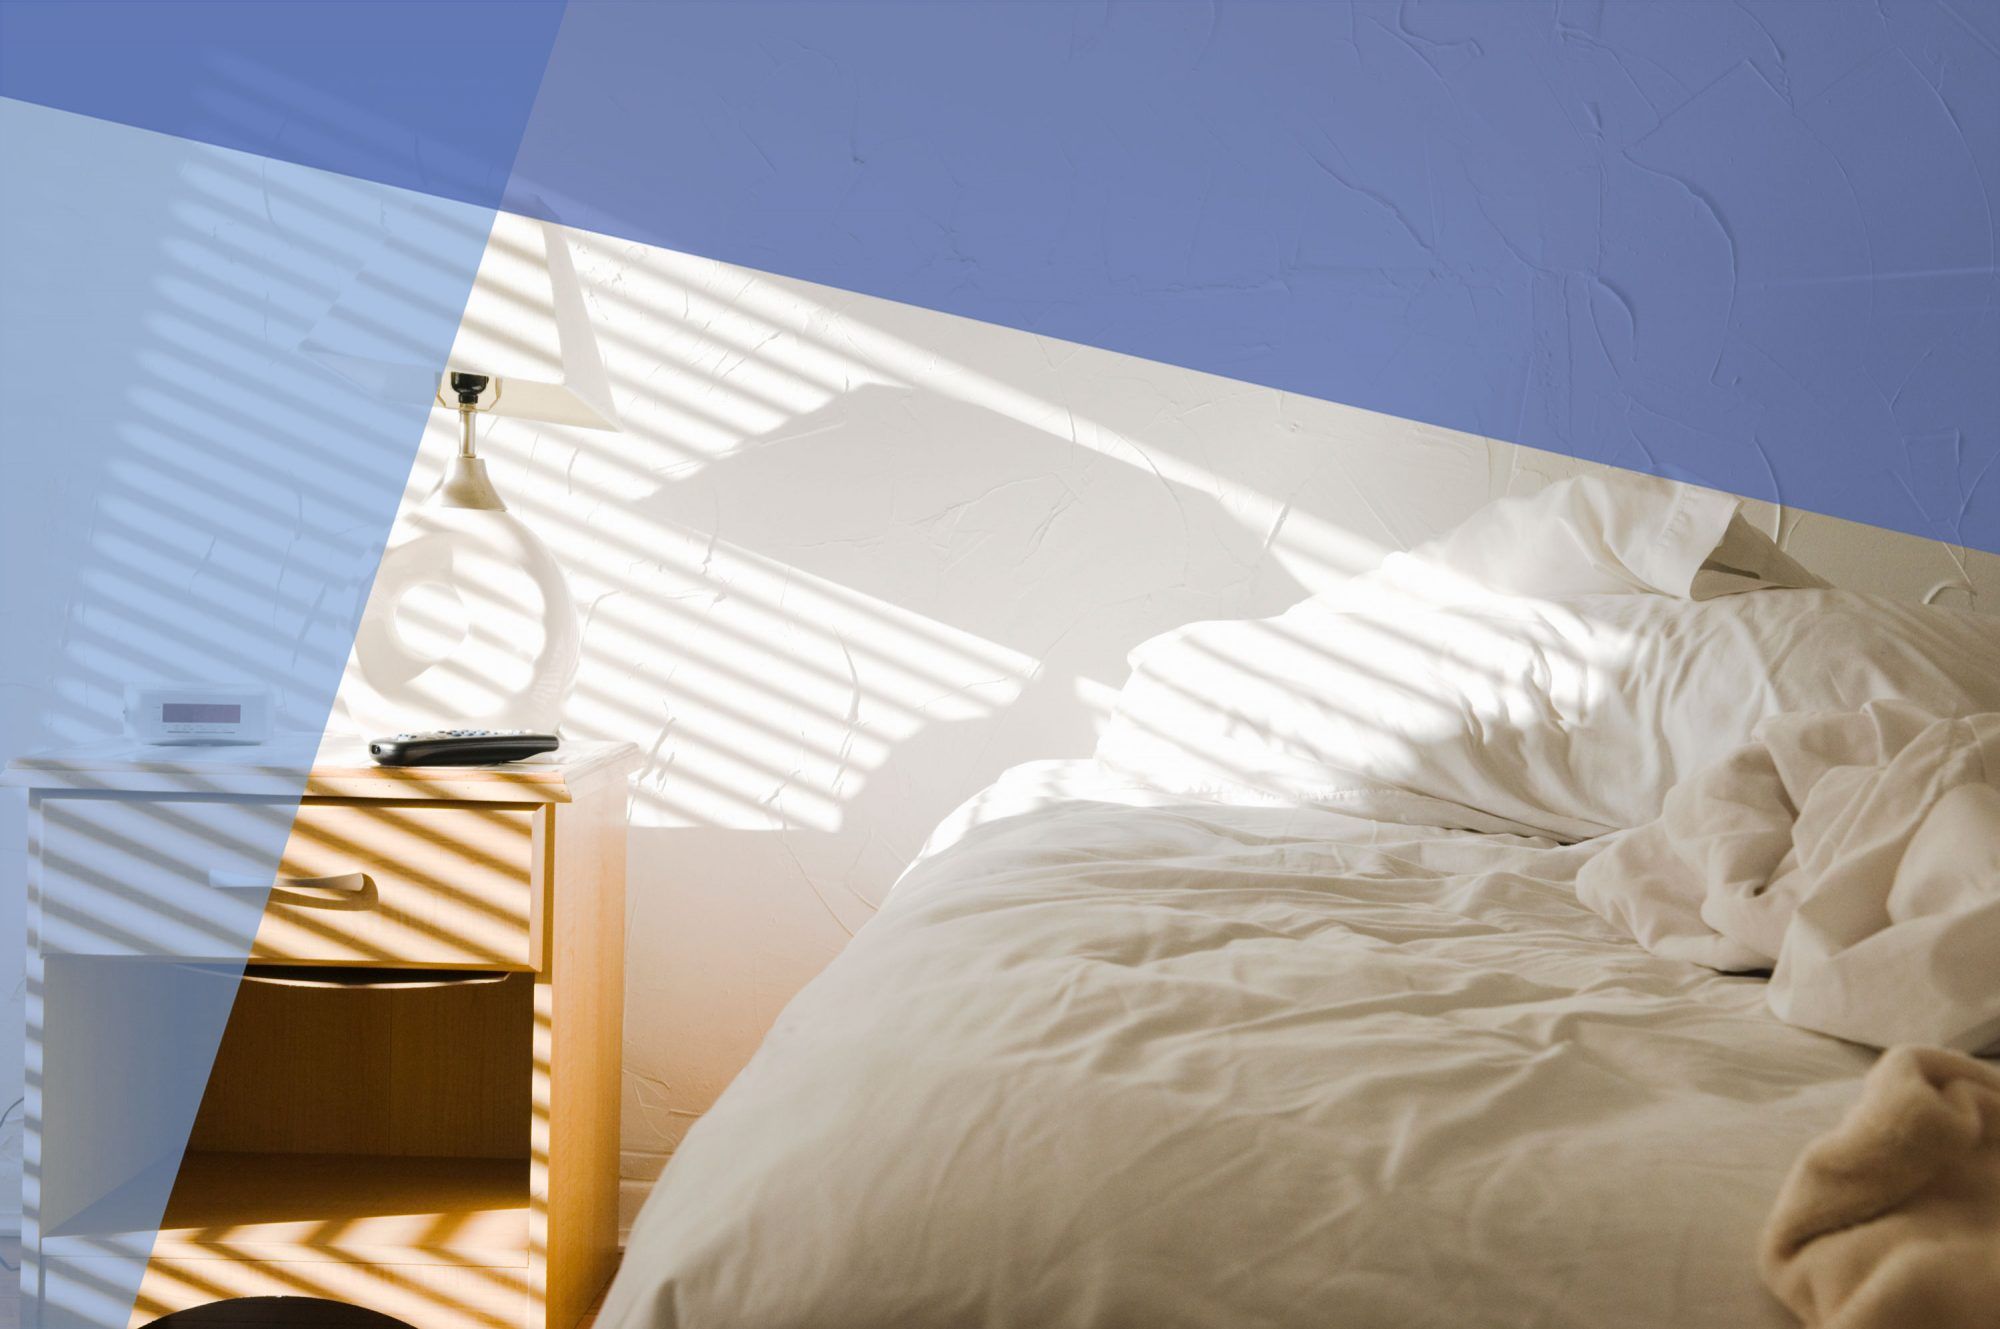 ข้อผิดพลาดทั่วไปในการนอน เรียนรู้วิธีการนอนหลับให้ดีขึ้น เตียงสีขาวและโต๊ะข้างเตียงไม้